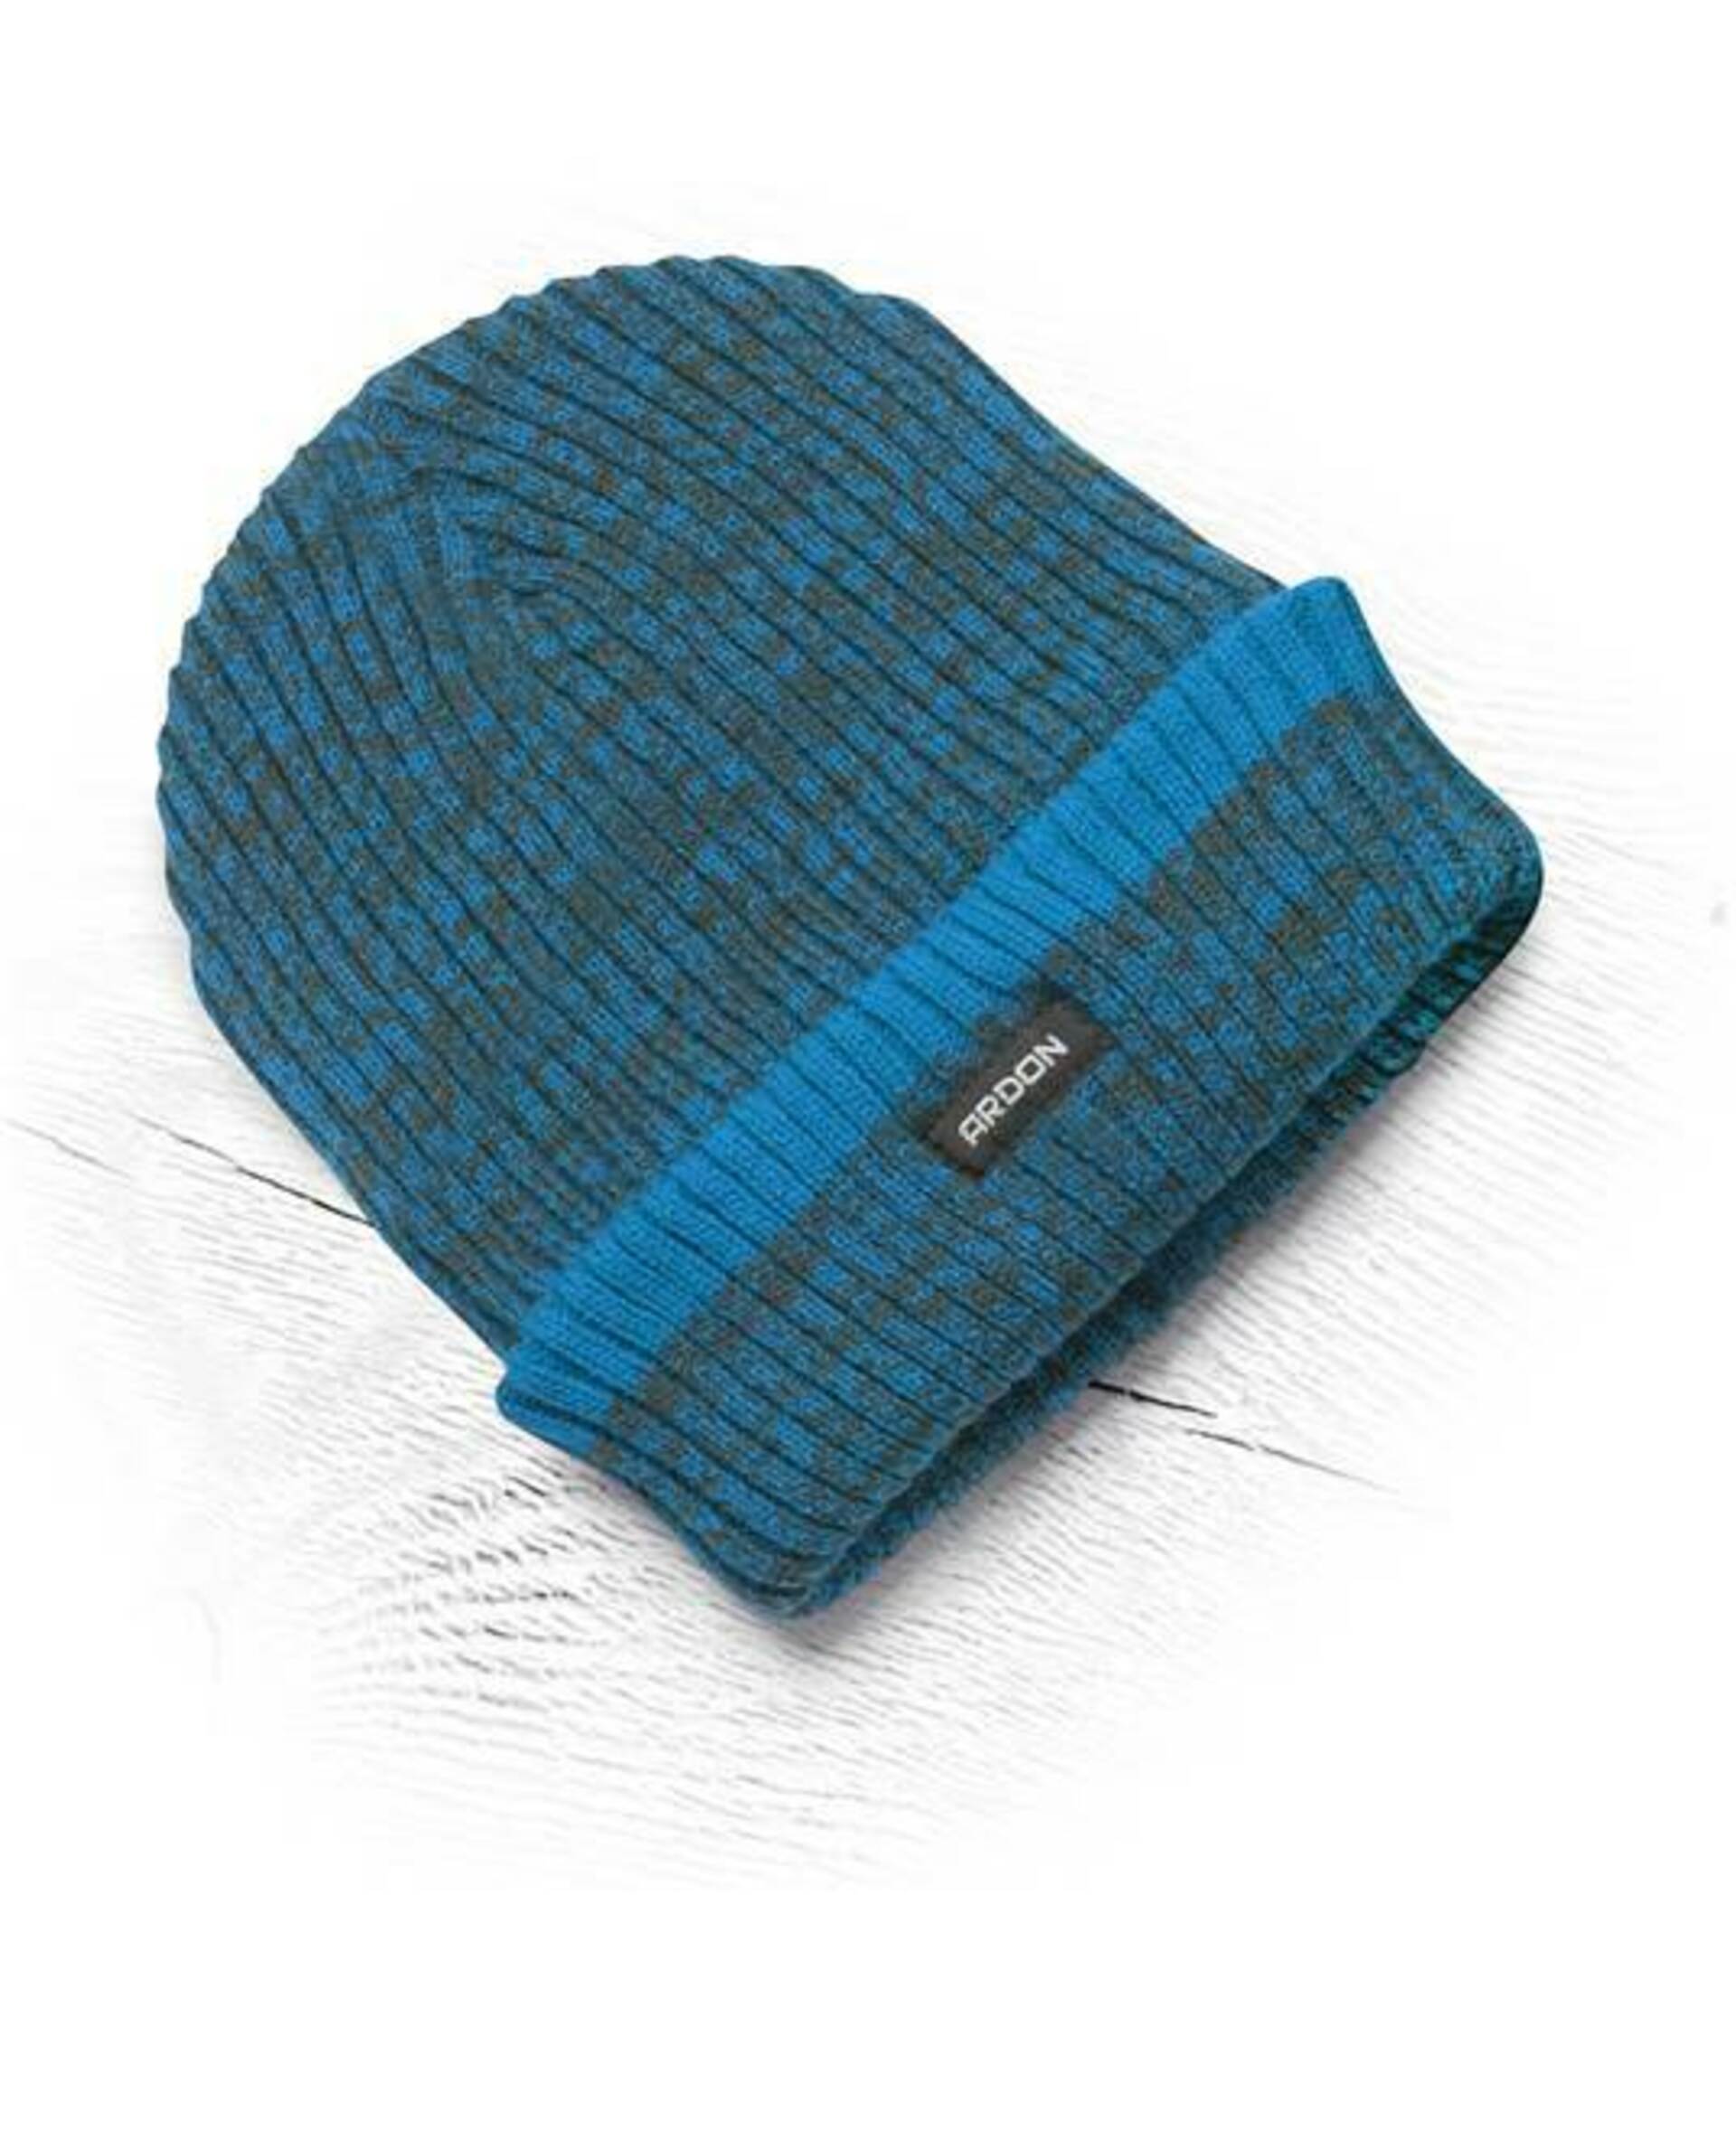 Ardon VISION NEO pletená Čepice zimní modrá + Bezplatné vrácení zboží